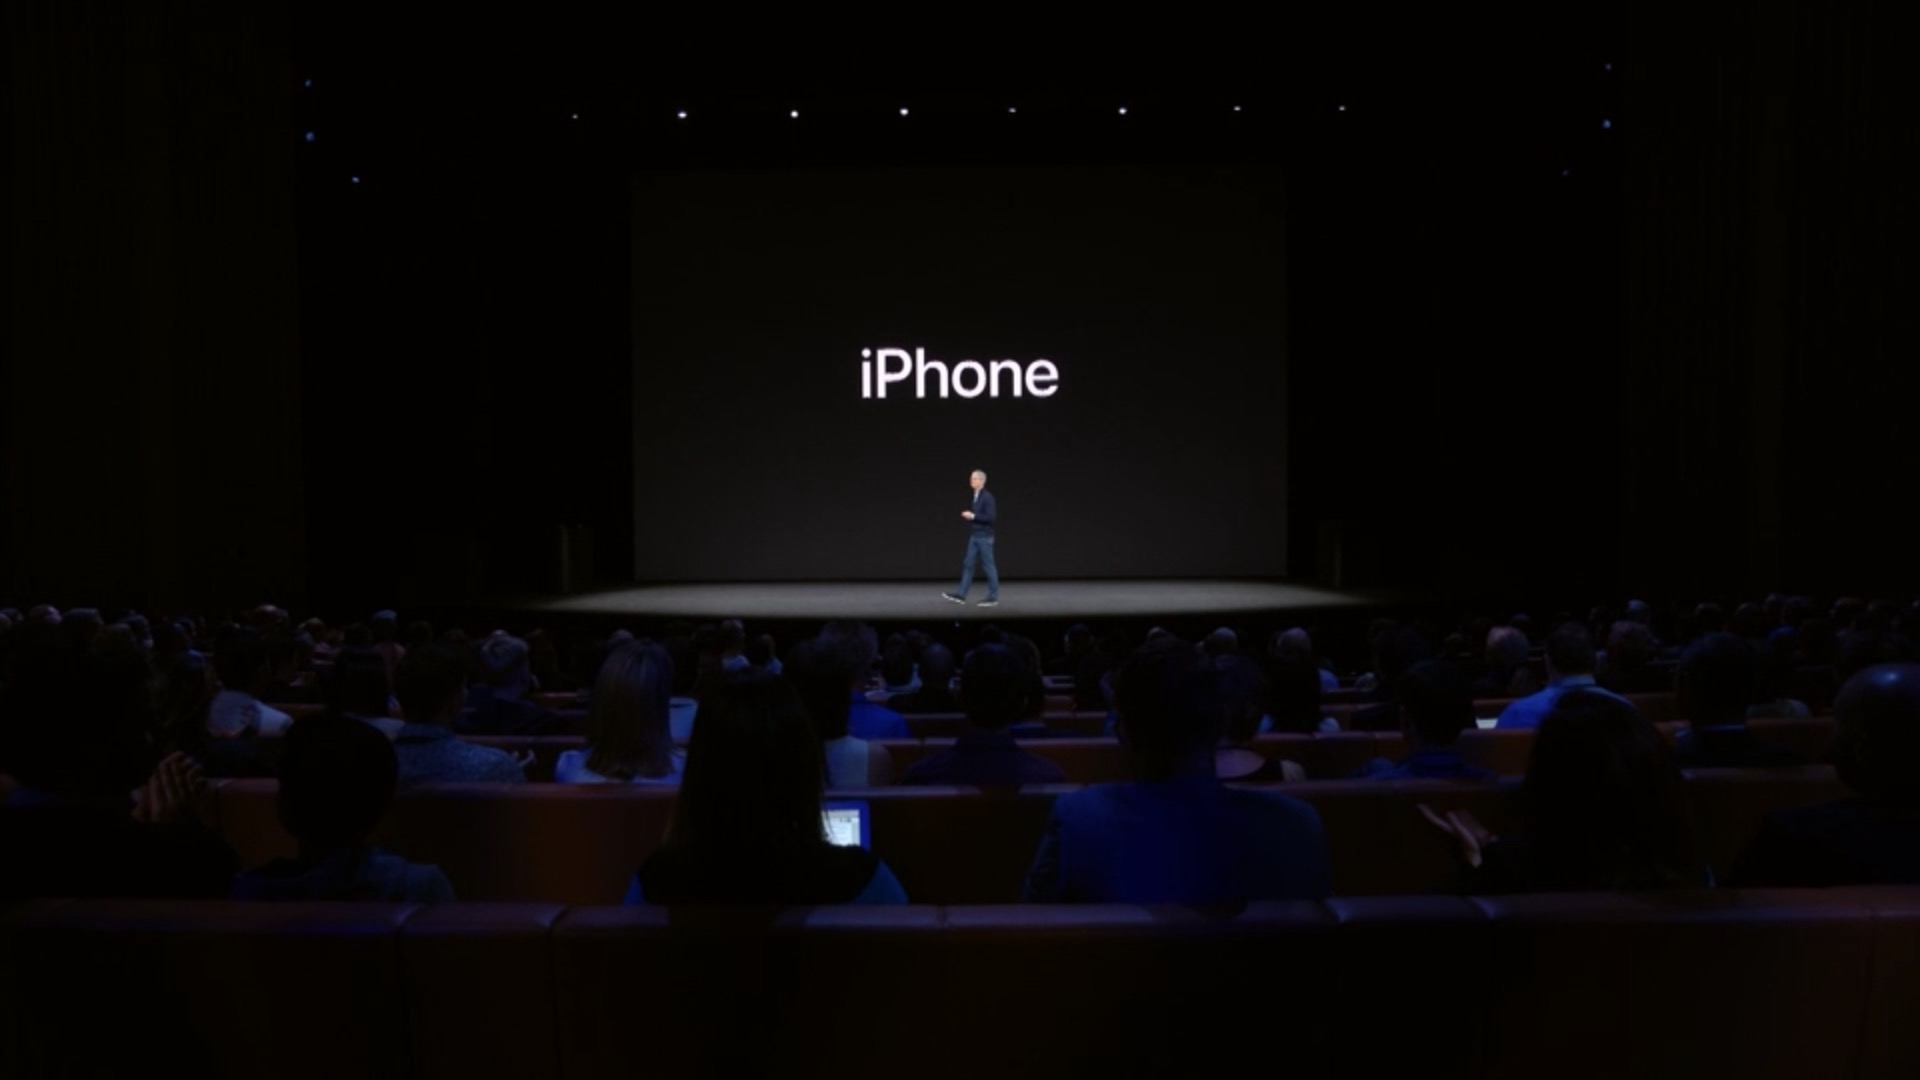 IPHONE 8: Sáng tạo, hiện đại và đa năng là những gì mà iPhone 8 mang lại cho bạn. Với màn hình sắc nét, camera chụp ảnh tuyệt đẹp và tính năng thông minh, bạn sẽ không thể rời mắt khỏi những hình ảnh thực tế và đa dạng được chụp bằng iPhone